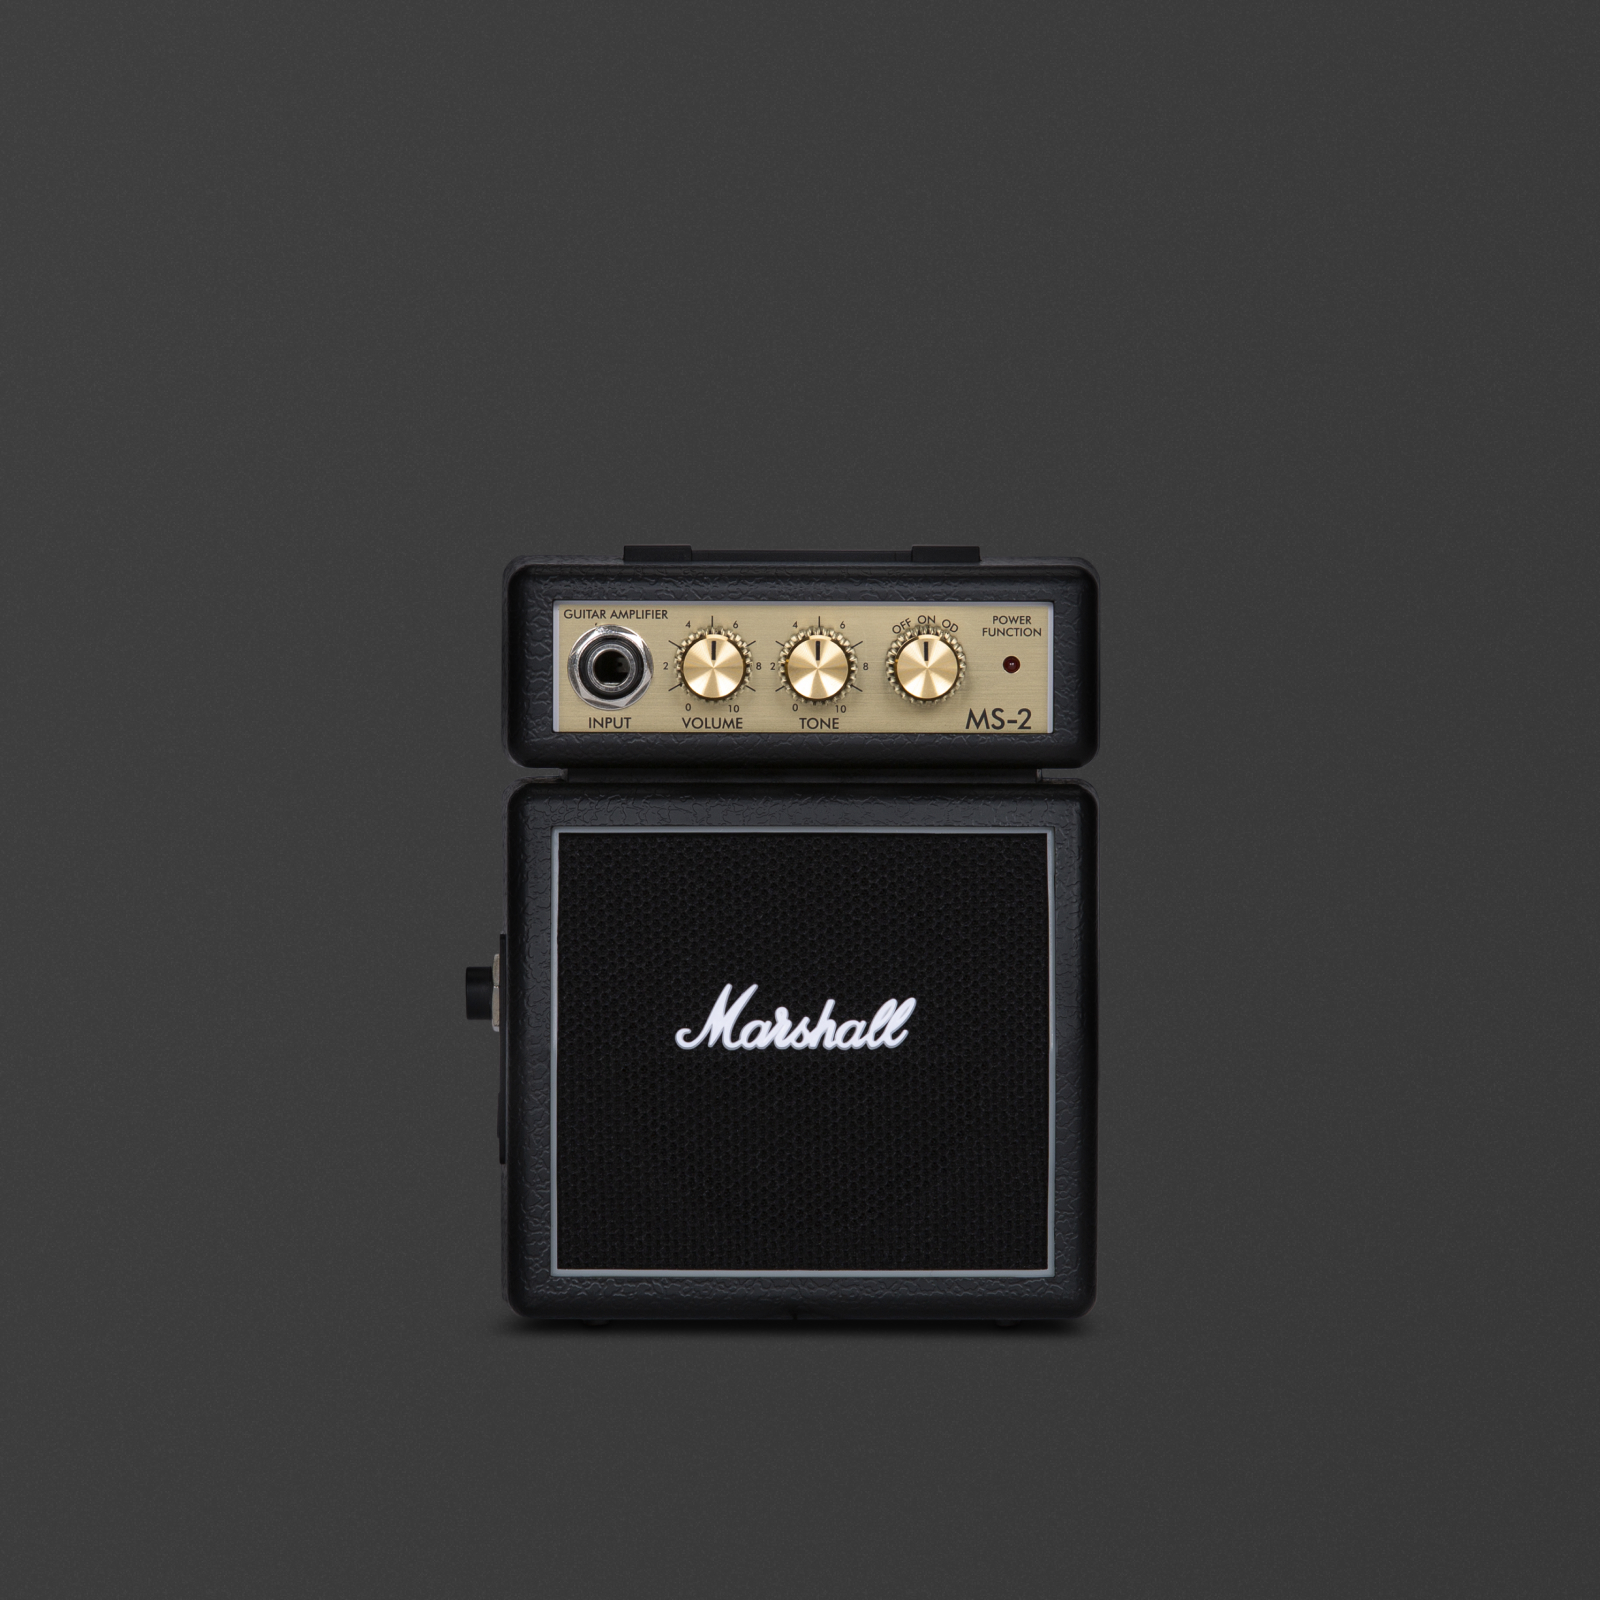 Pequeño micro-amplificador en color negro de Marshall